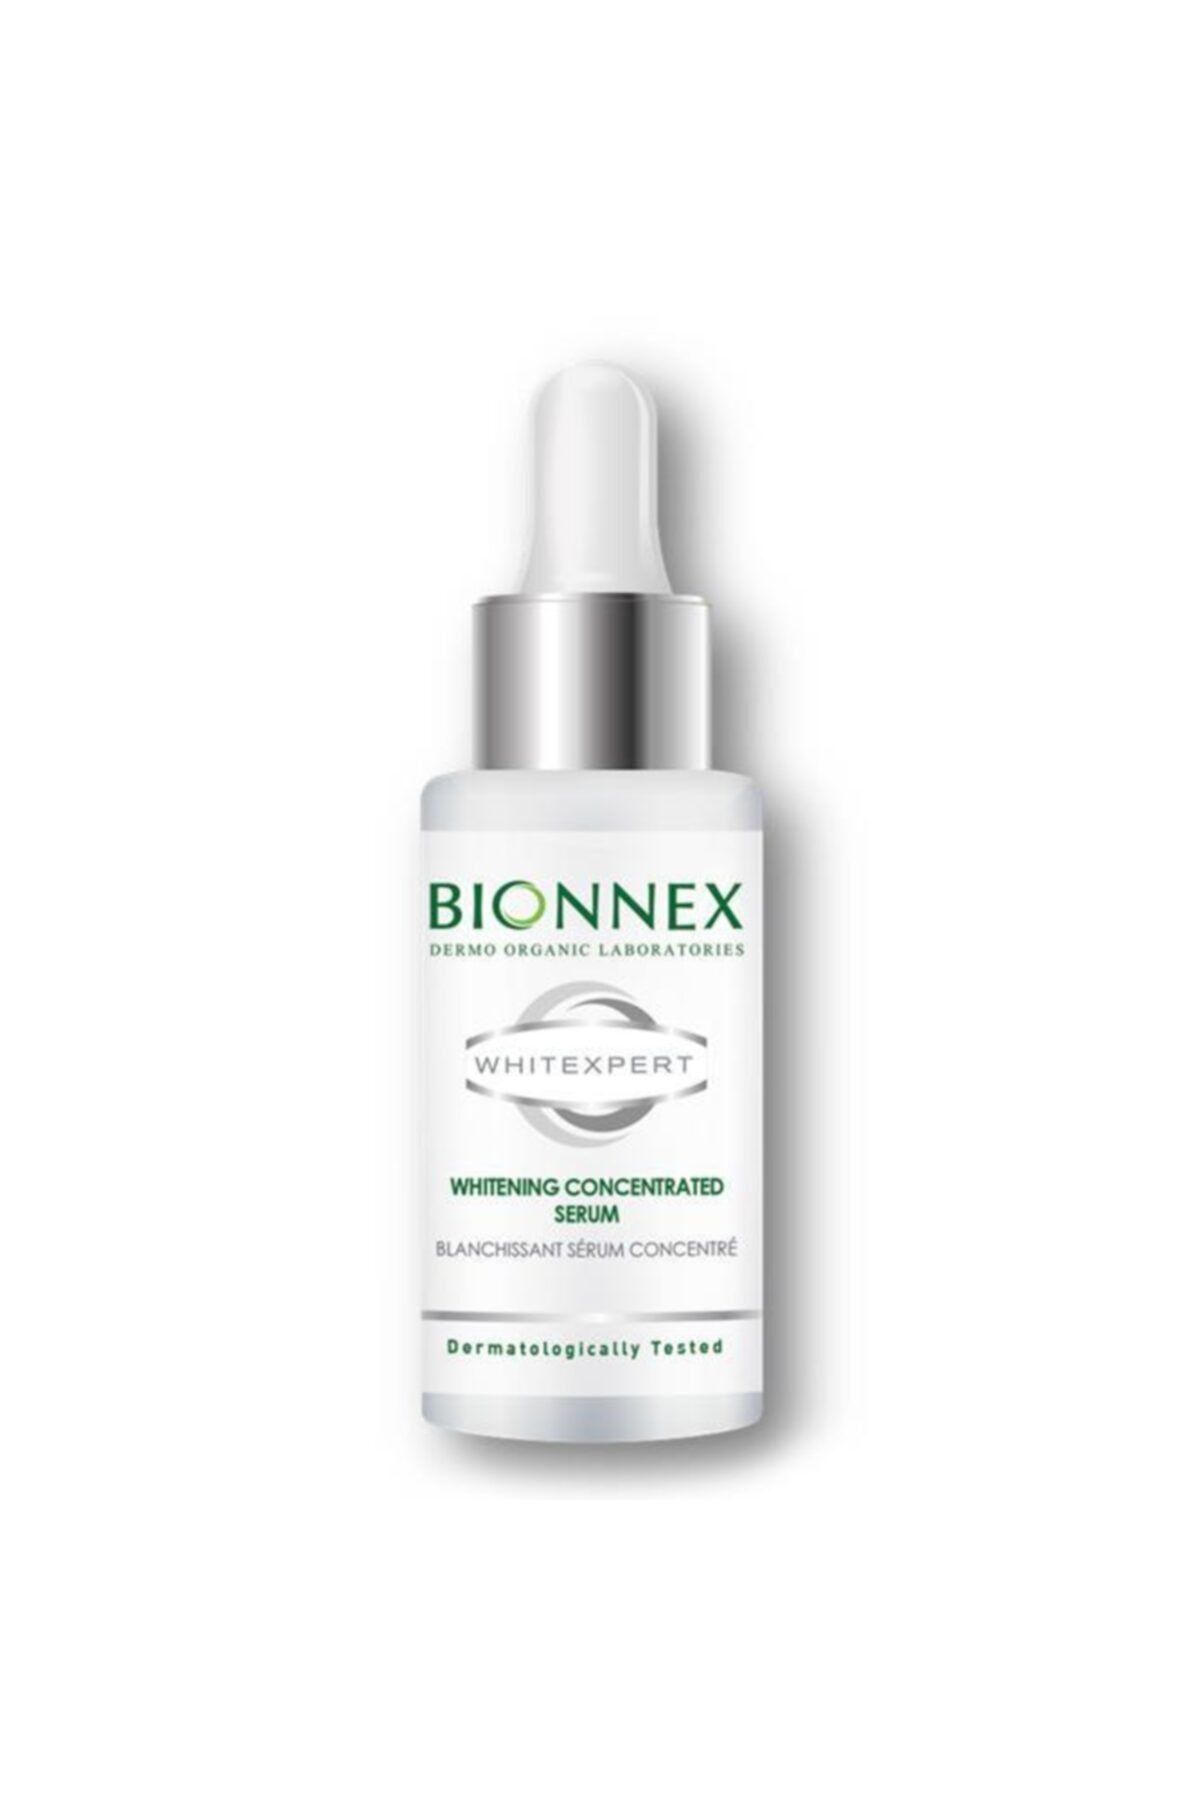 Bionnex Whitexpert Lekeli Ciltler İçin Bakım Serumu 20 ml